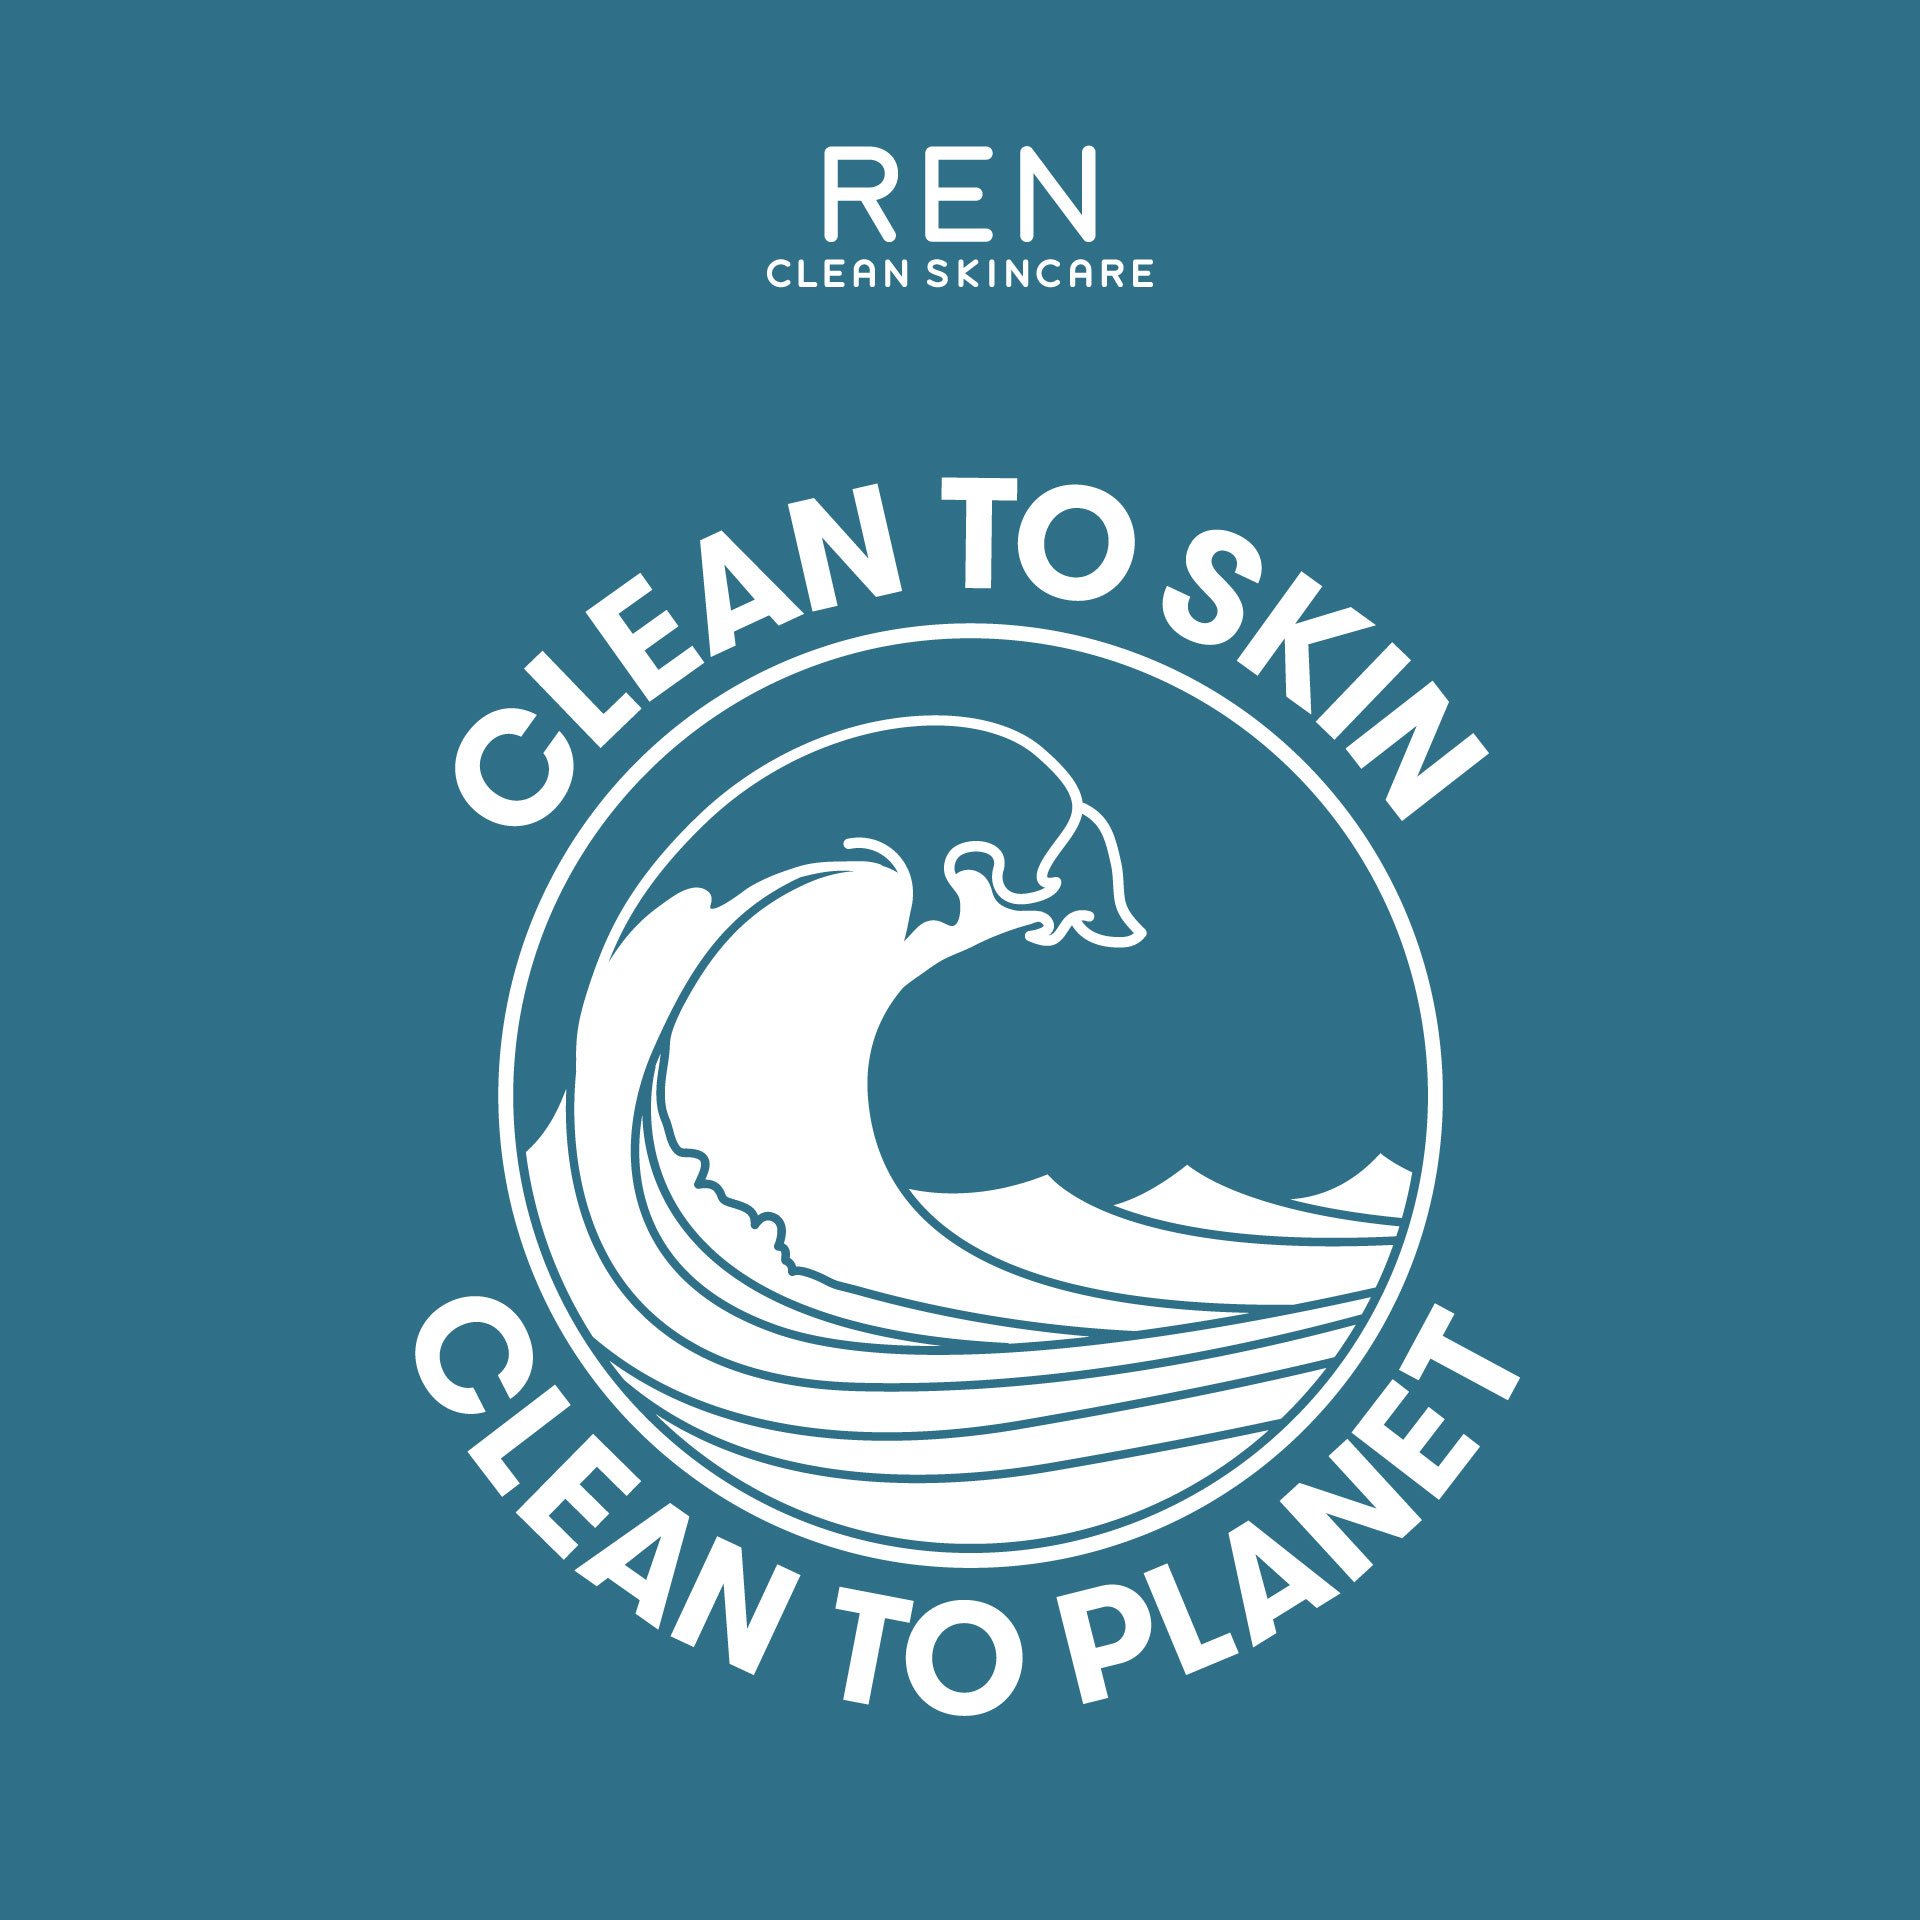 Imogen-Ren-Clean-To-Skin-Clean-To-Planet.jpg